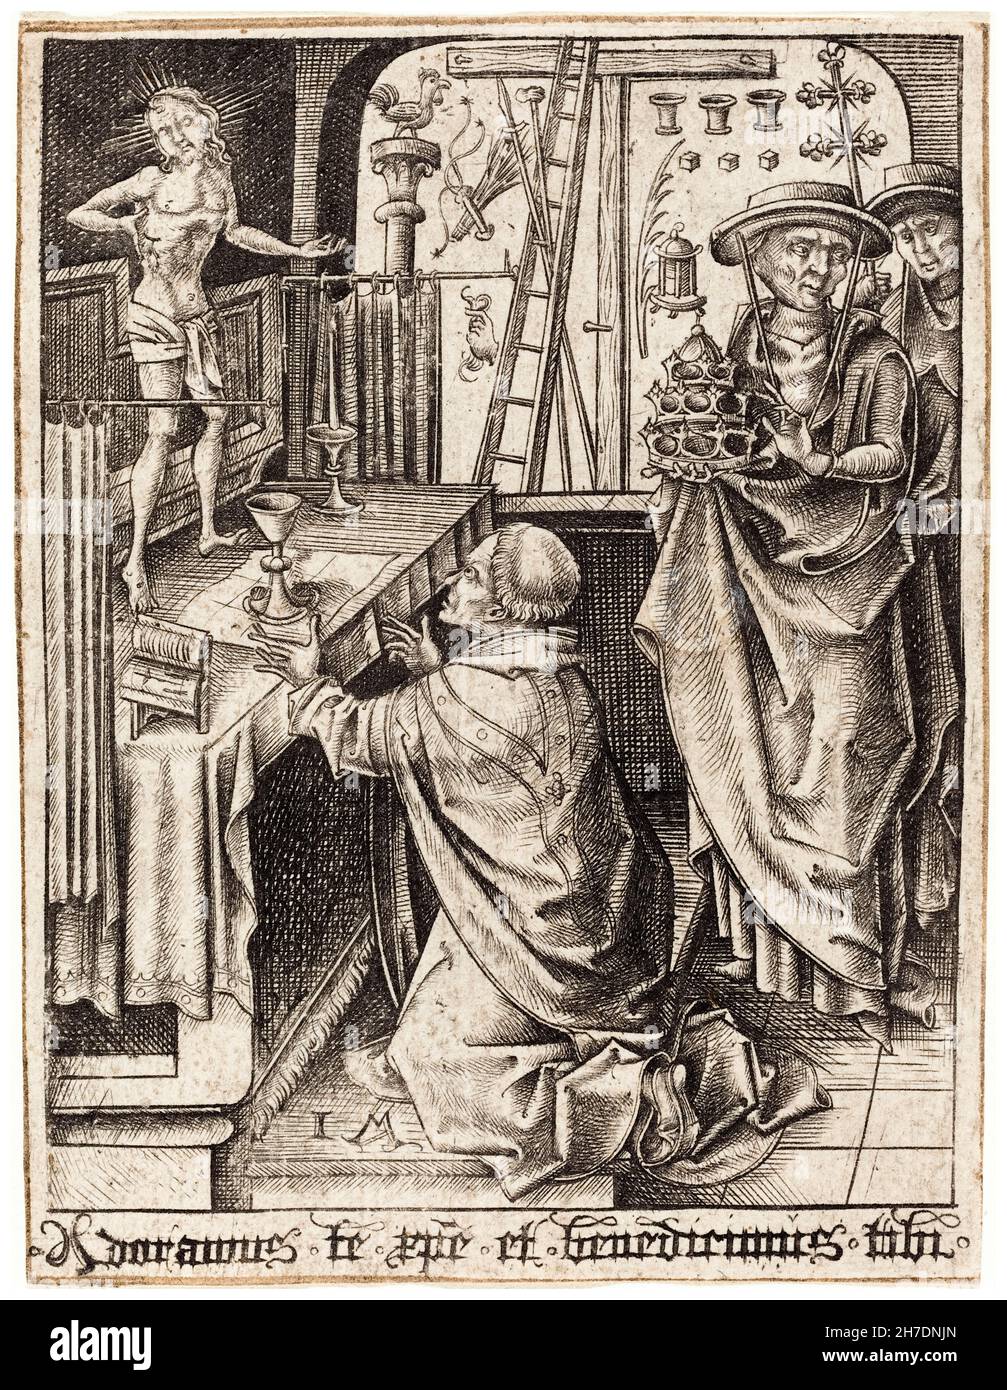 Israël van Meckenem, la messe de Saint Grégoire, gravure, 1480-1490 Banque D'Images